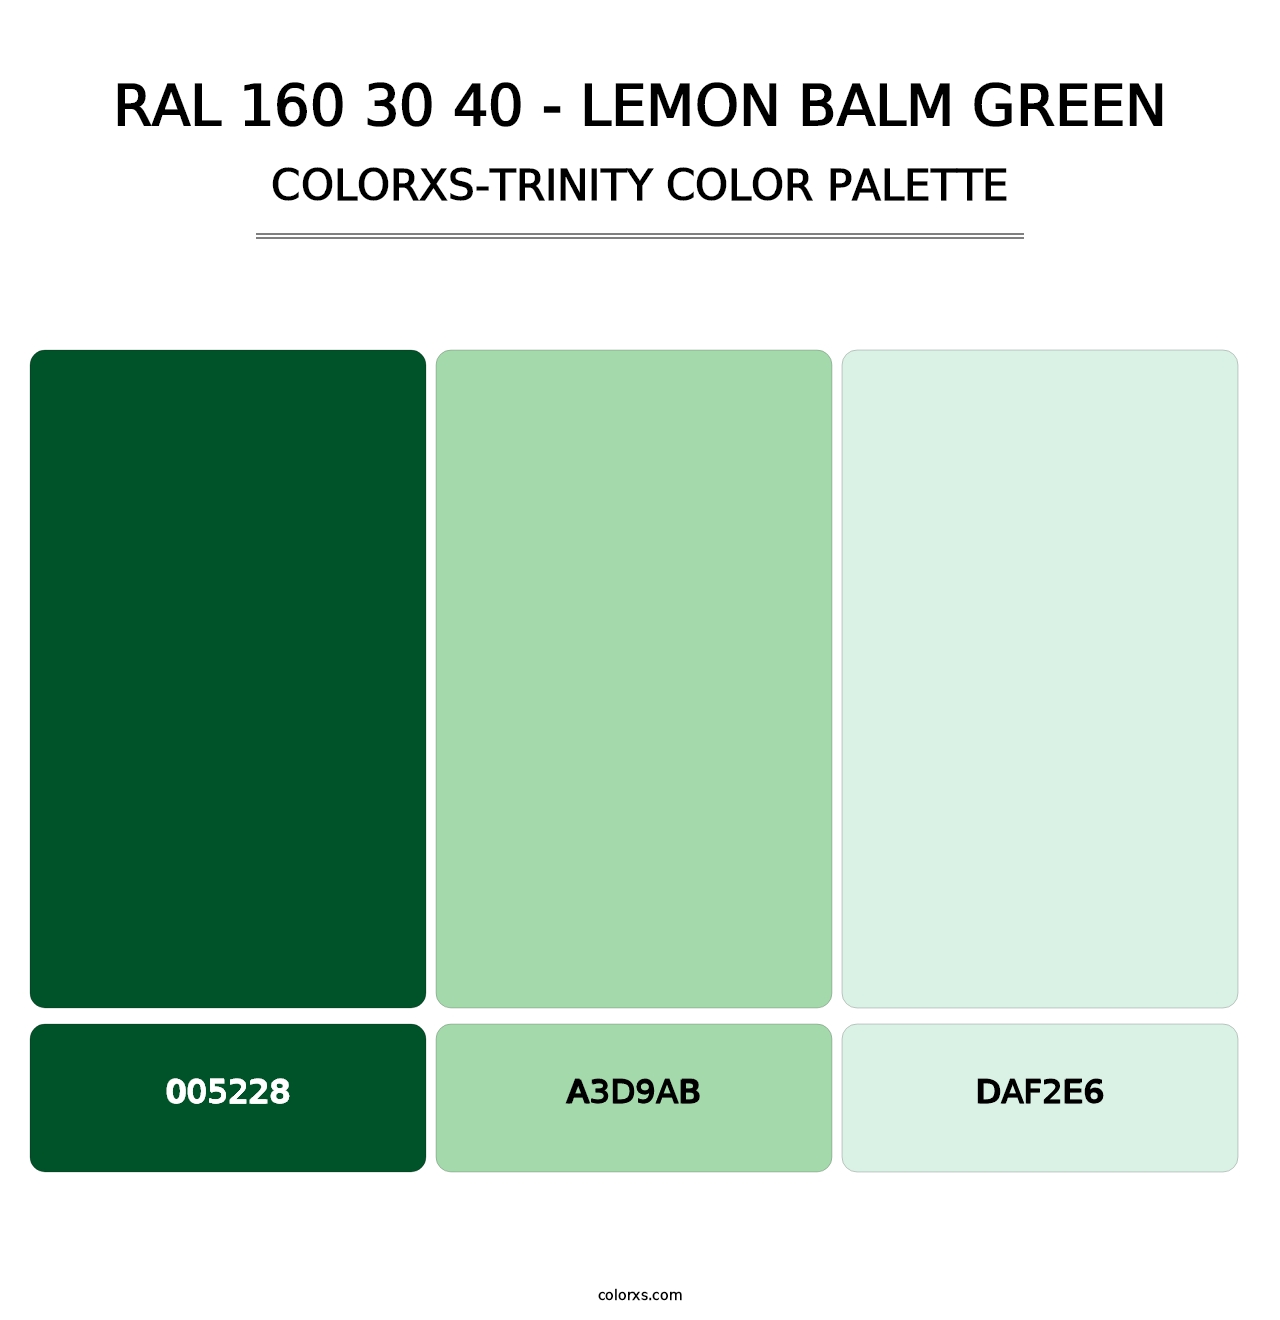 RAL 160 30 40 - Lemon Balm Green - Colorxs Trinity Palette